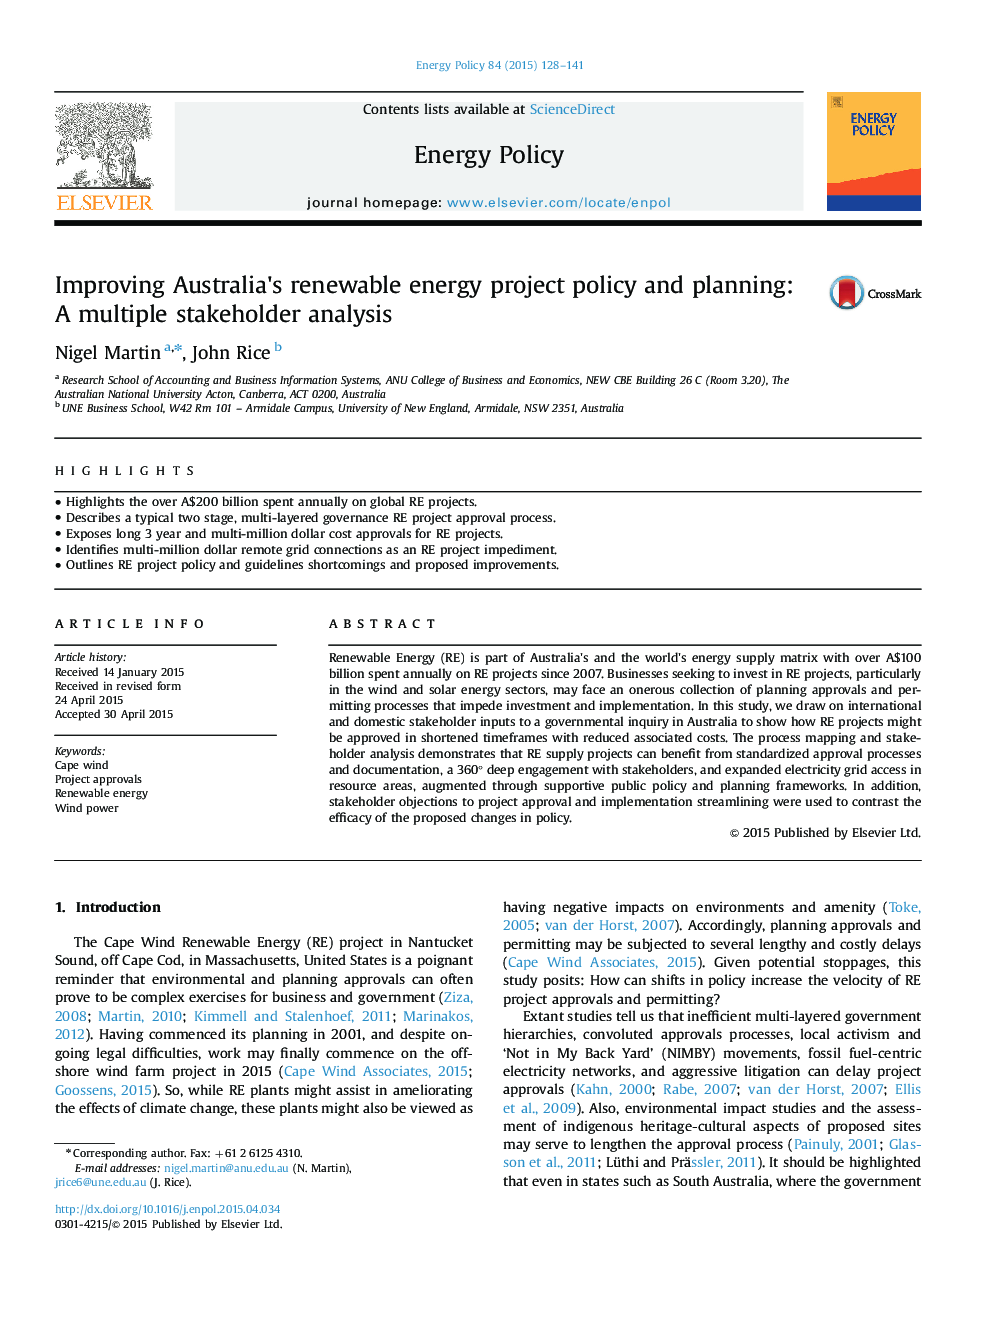 بهبود خط مشی و برنامه ریزی پروژه انرژی تجدید پذیر استرالیا: تجزیه و تحلیل سهامداران چندگانه 